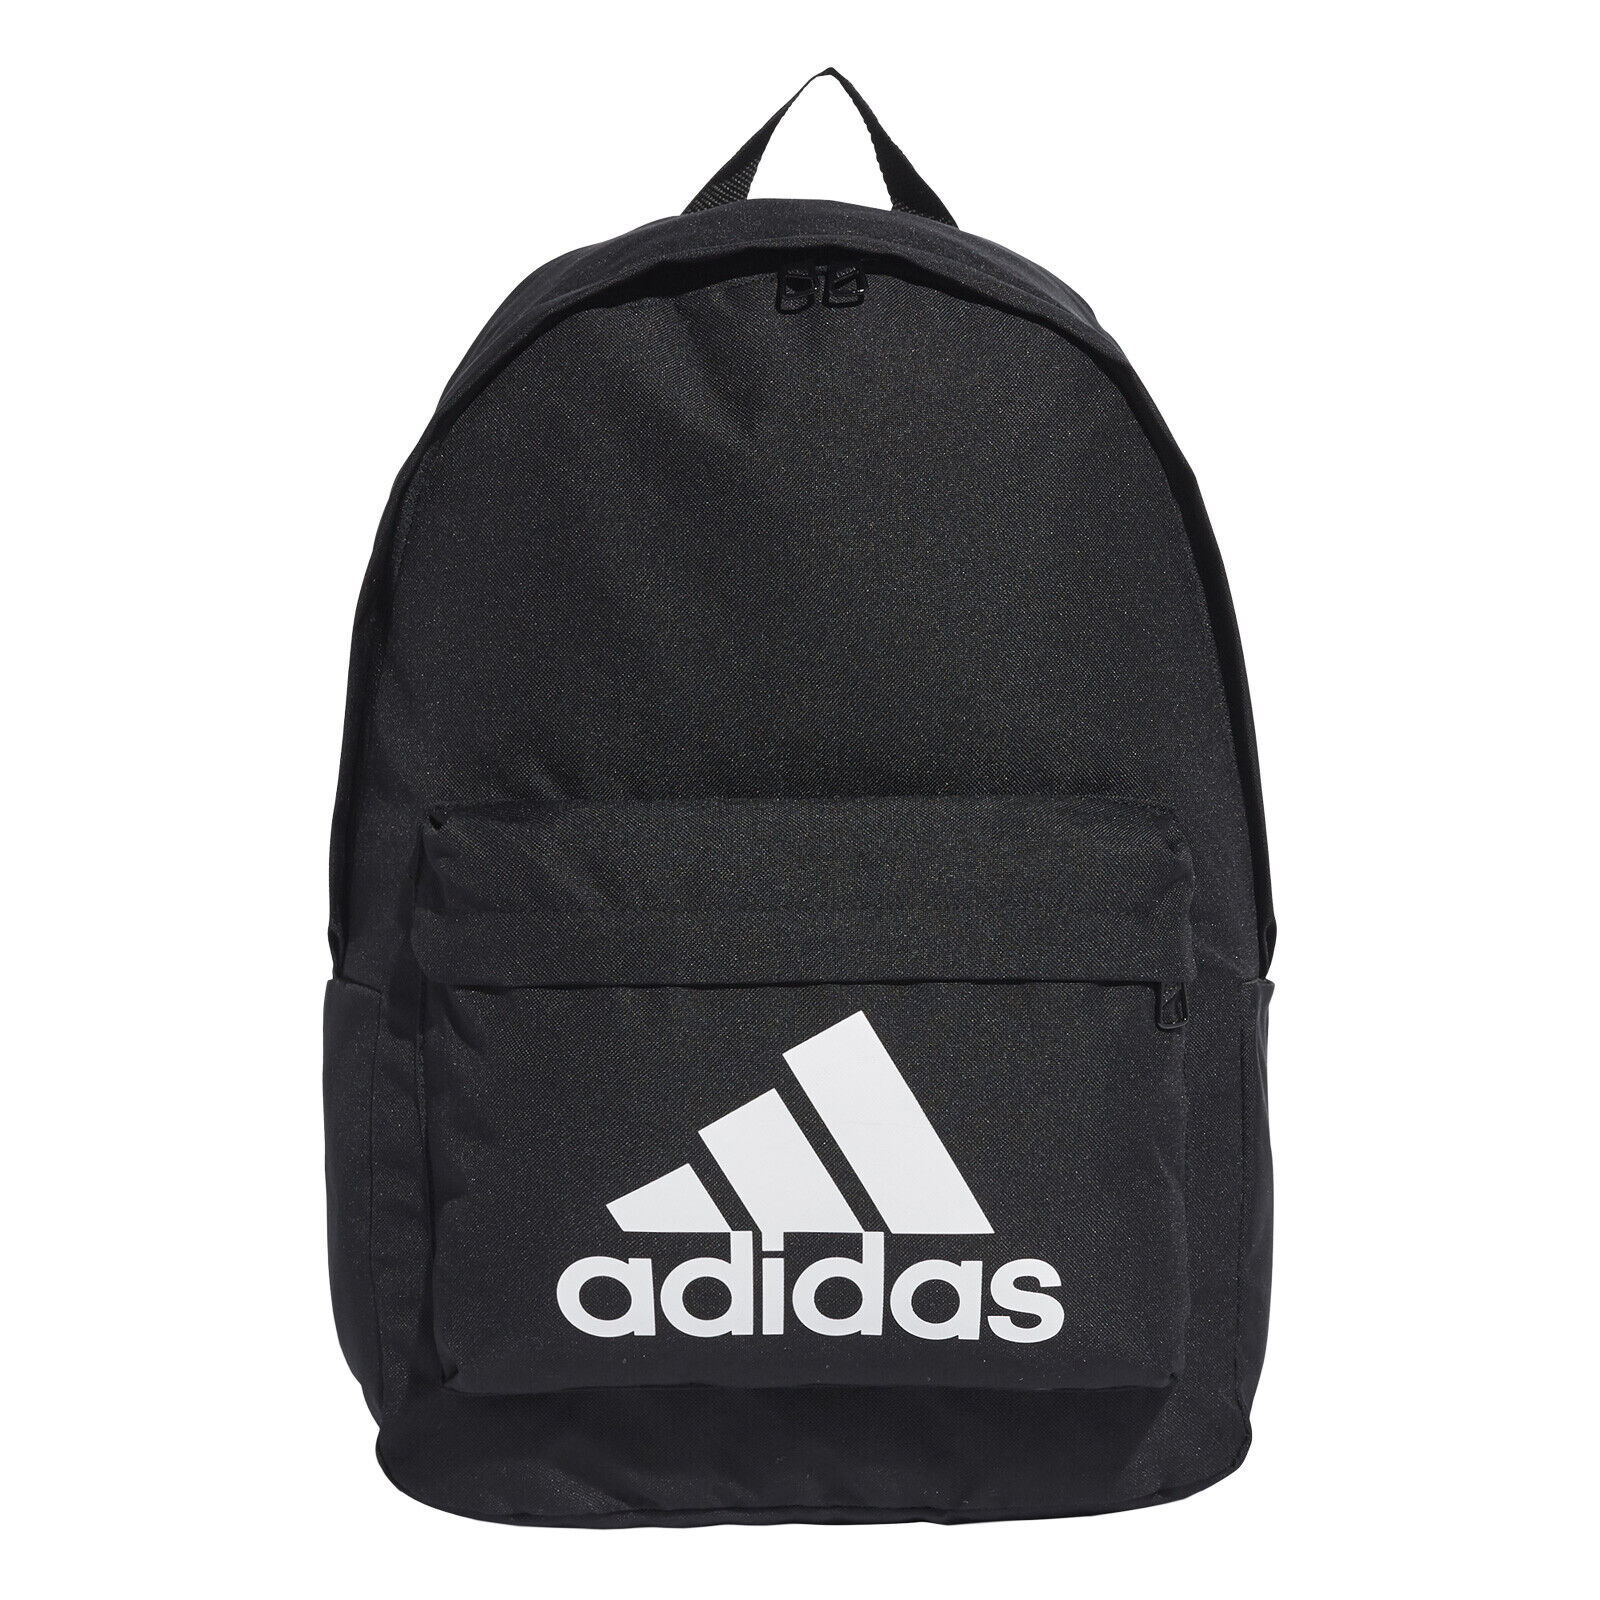 Рюкзак мужской Adidas CLASSIC BP S черный рюкзак мужской adidas classic bp s